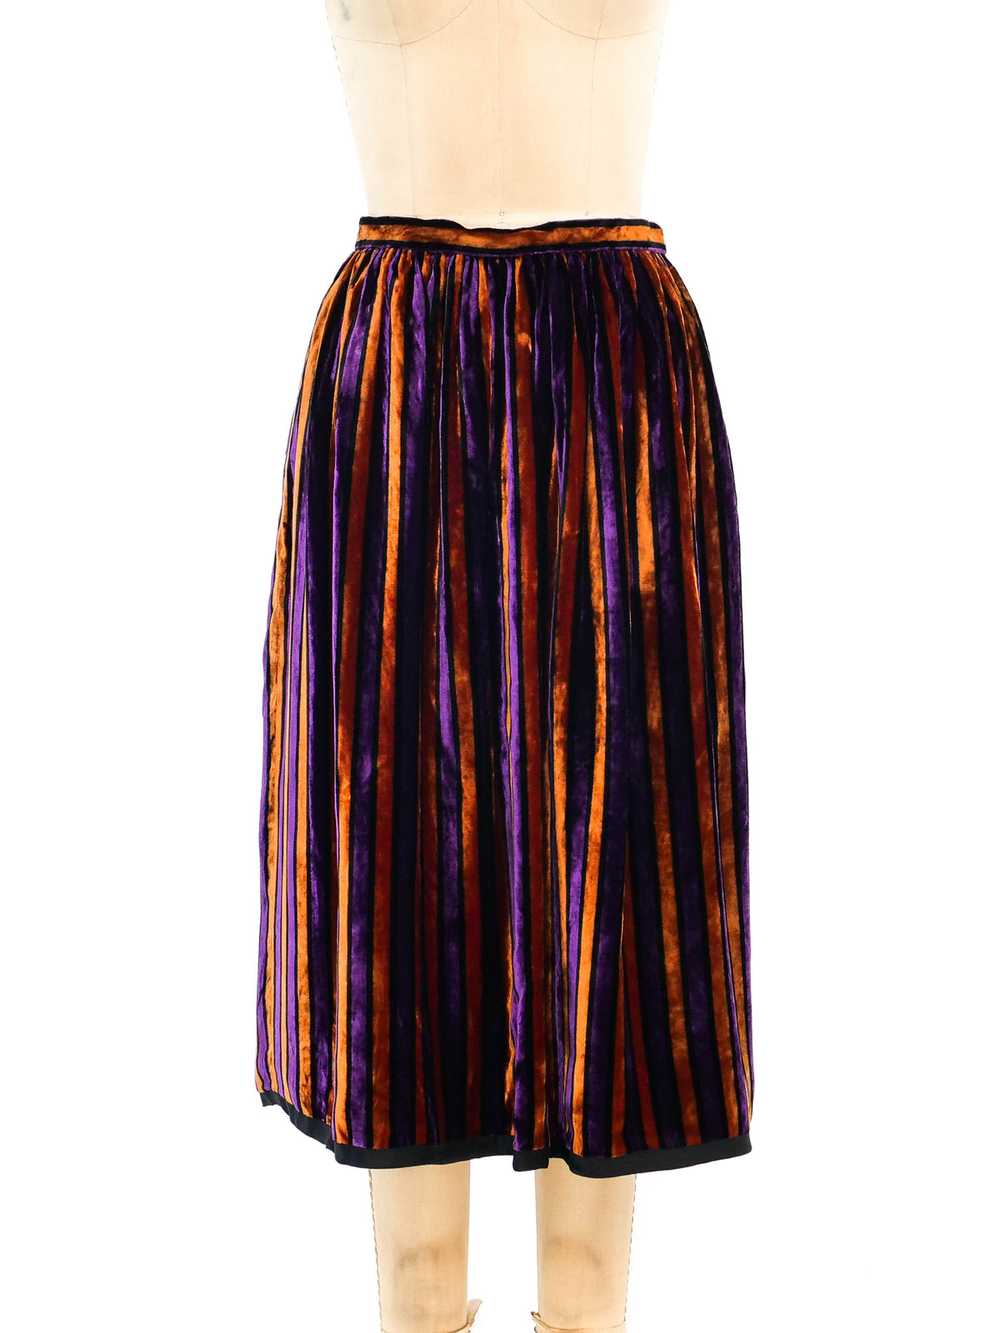 Givenchy Striped Velvet Skirt - image 1